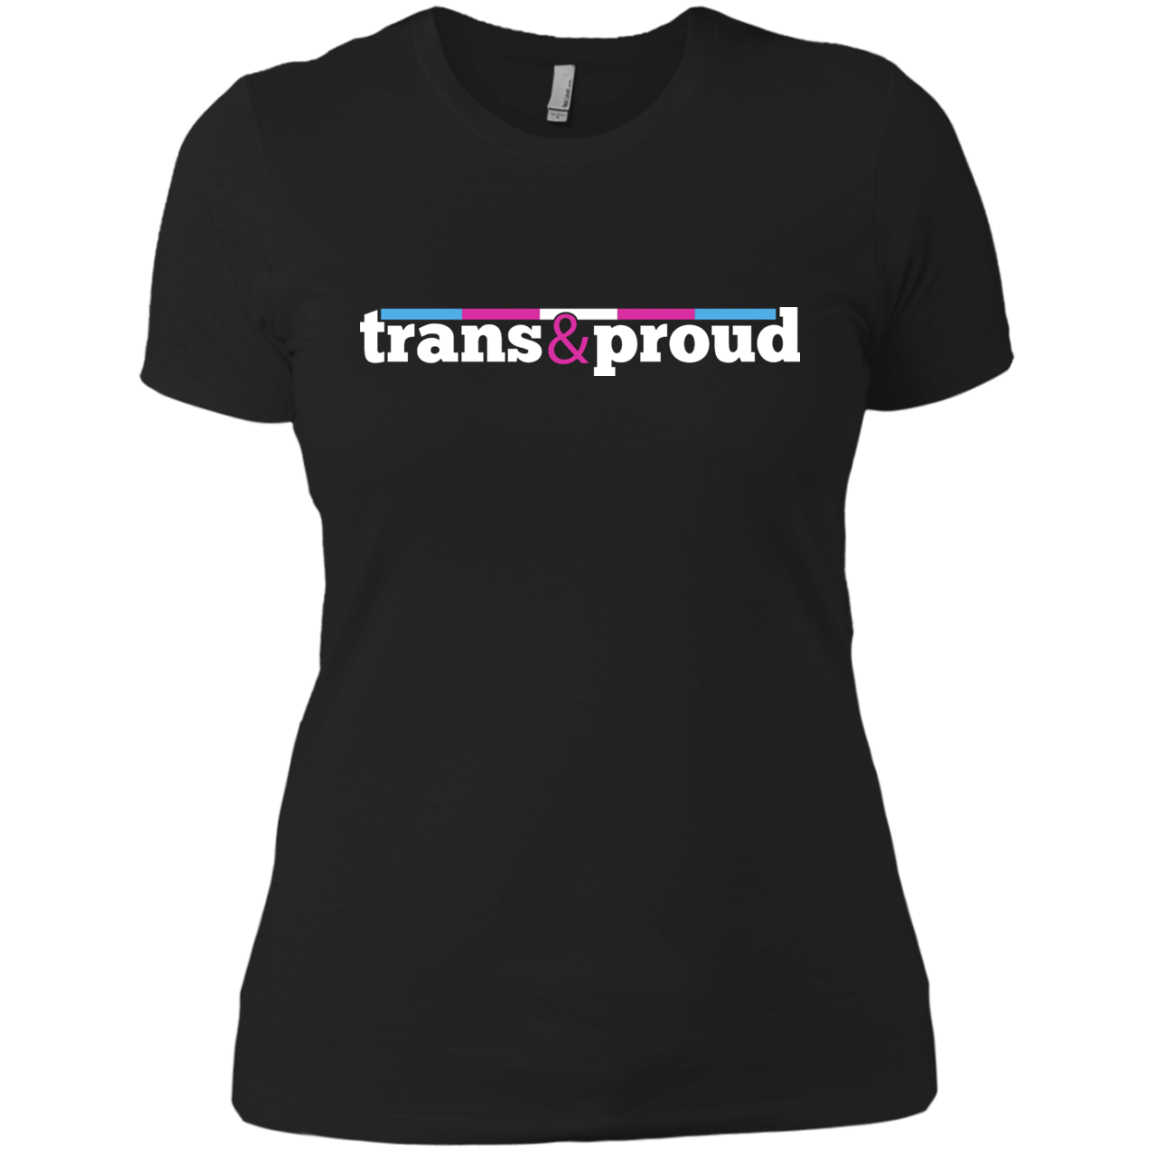 Trans and Proud Sweatshirt & Hoodie